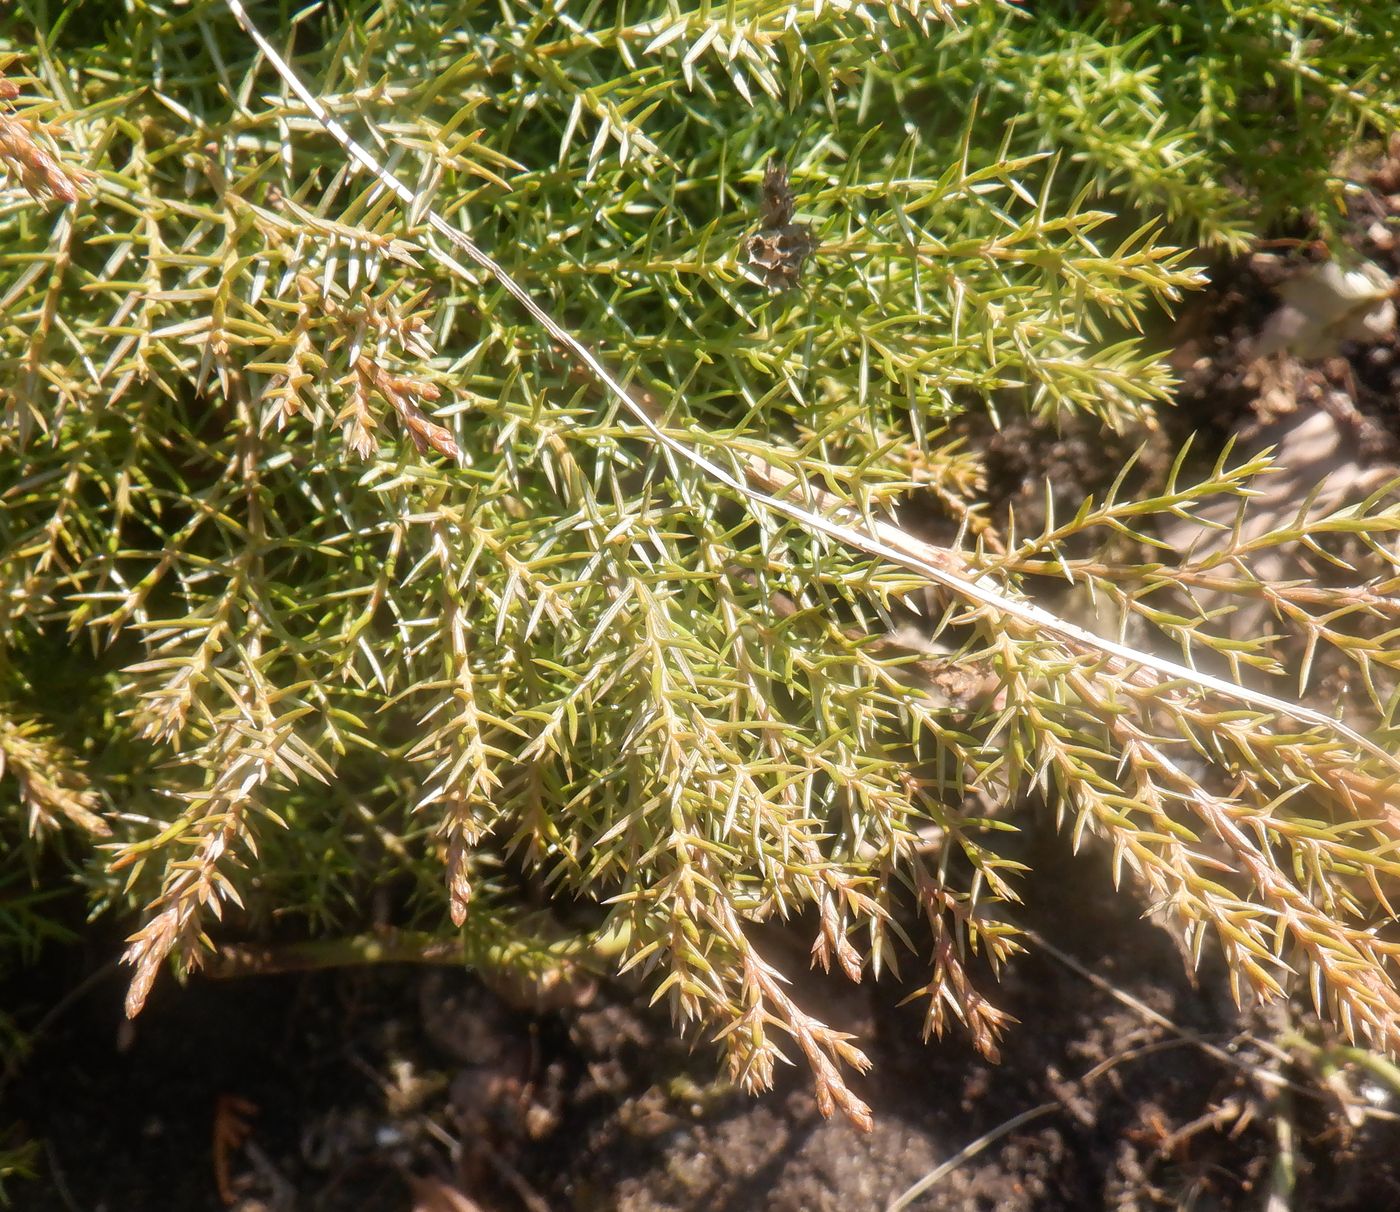 Image of genus Juniperus specimen.